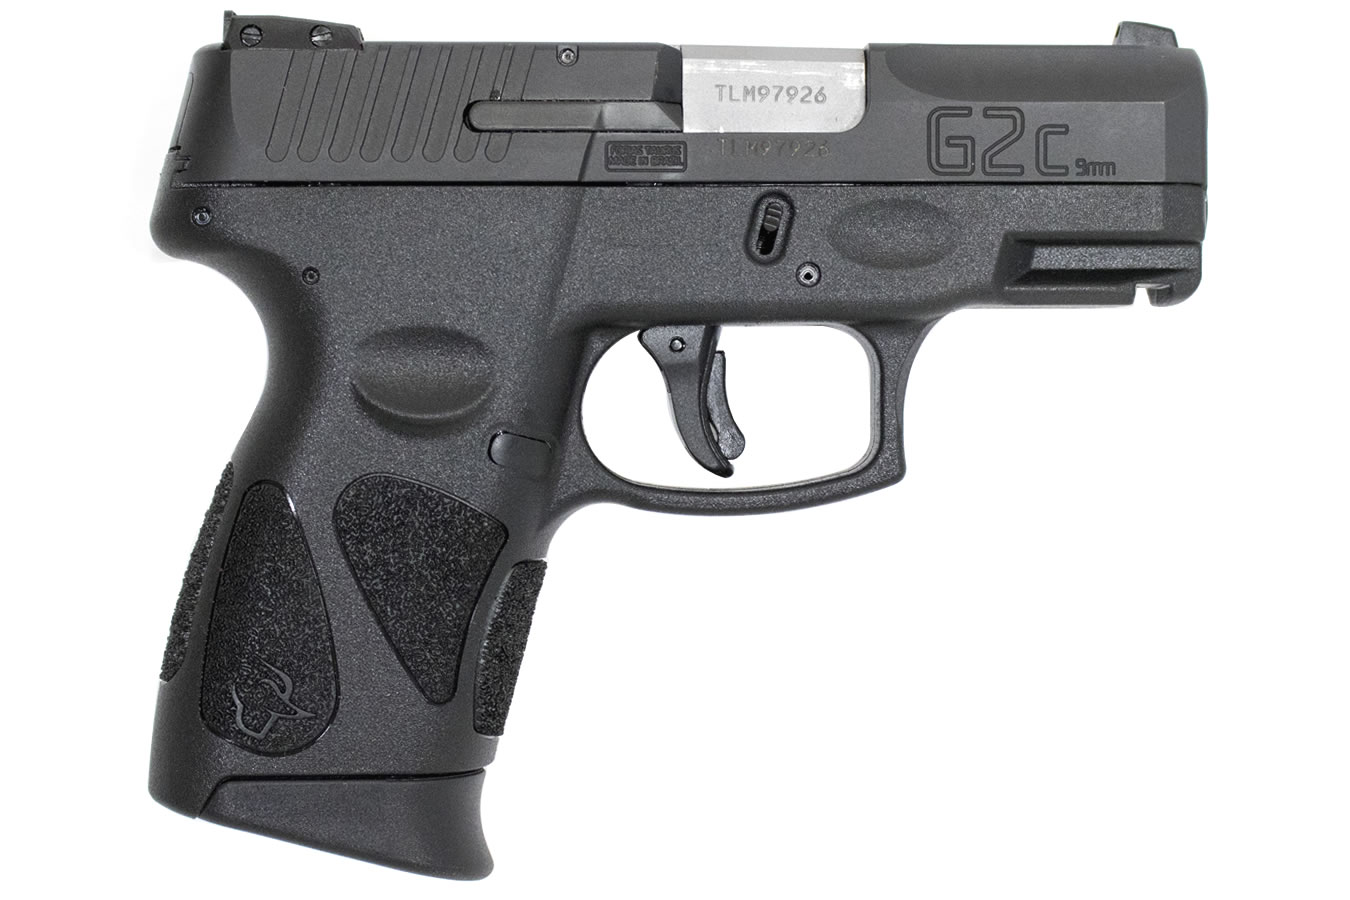 Taurus P2C pistol image